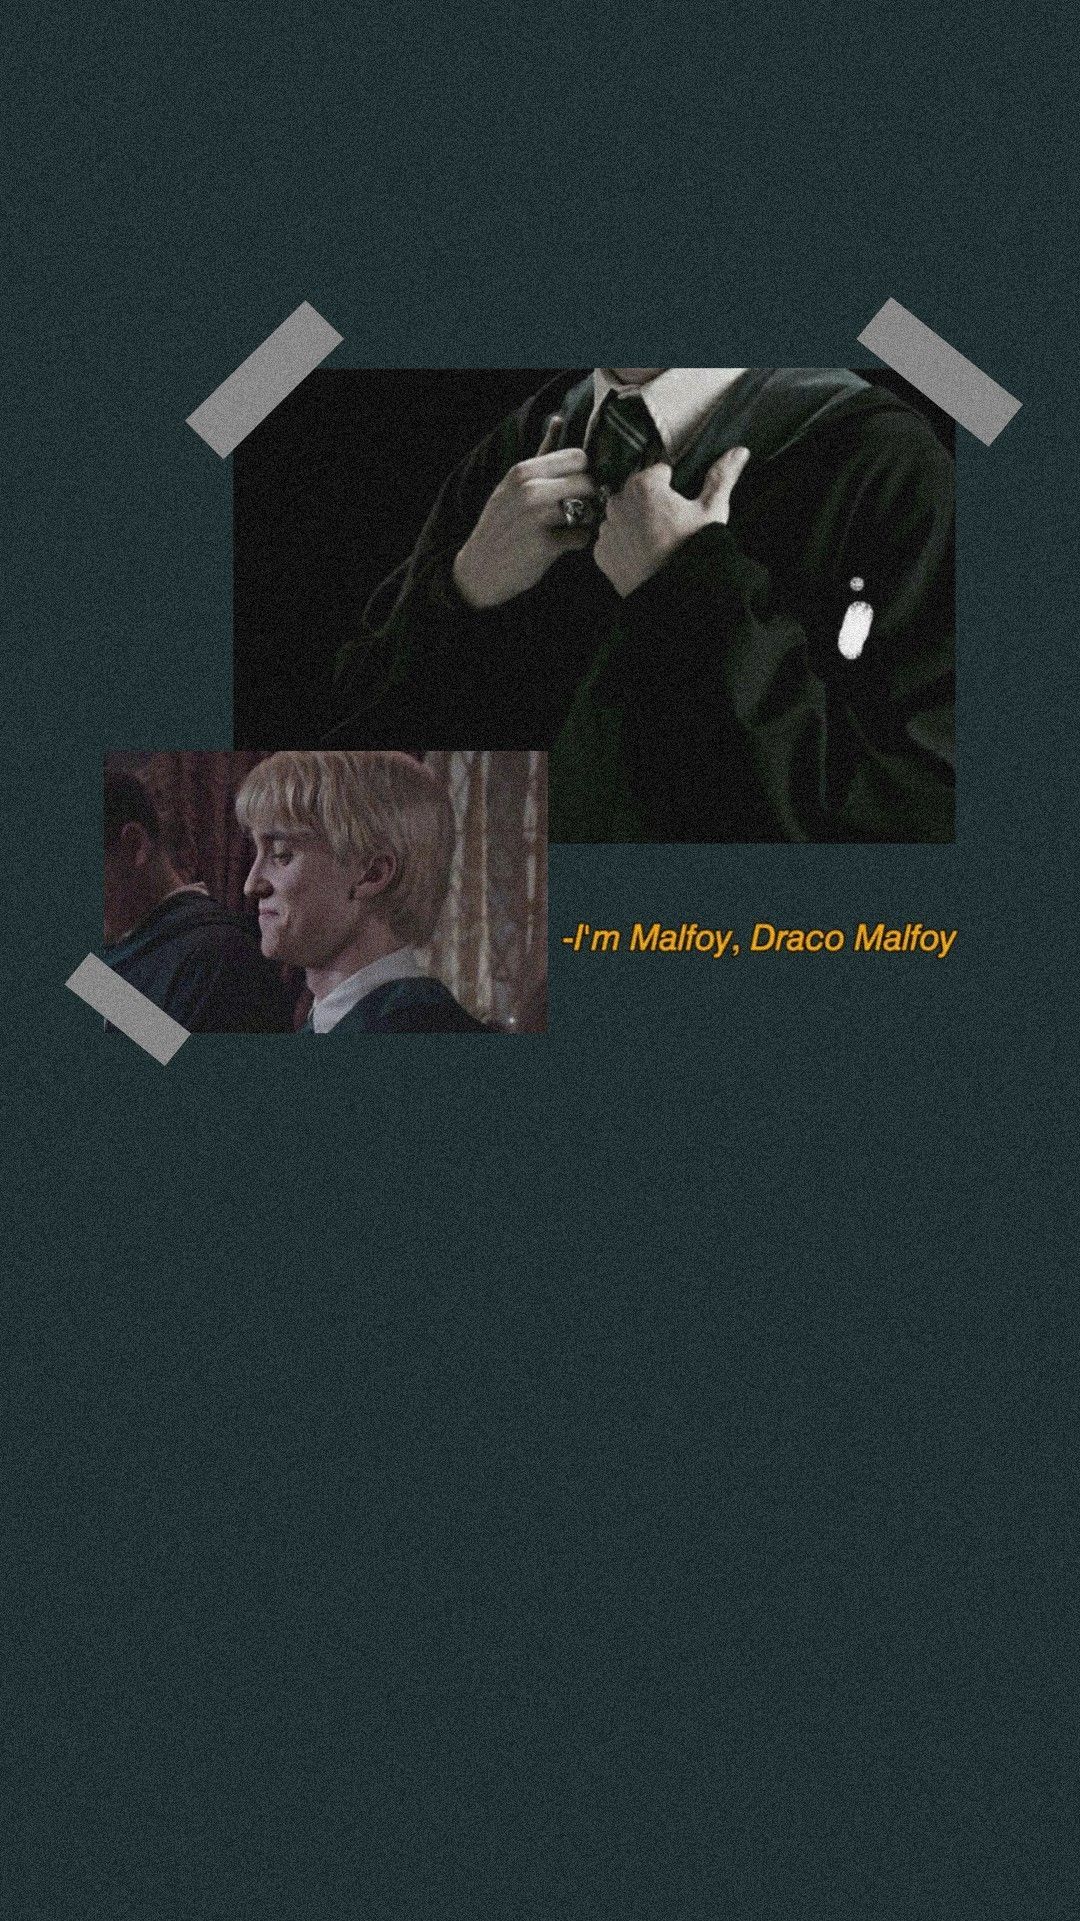 draco malfoy lockscreen wallpaper. Draco malfoy aesthetic, Draco malfoy, Draco malfoy hot